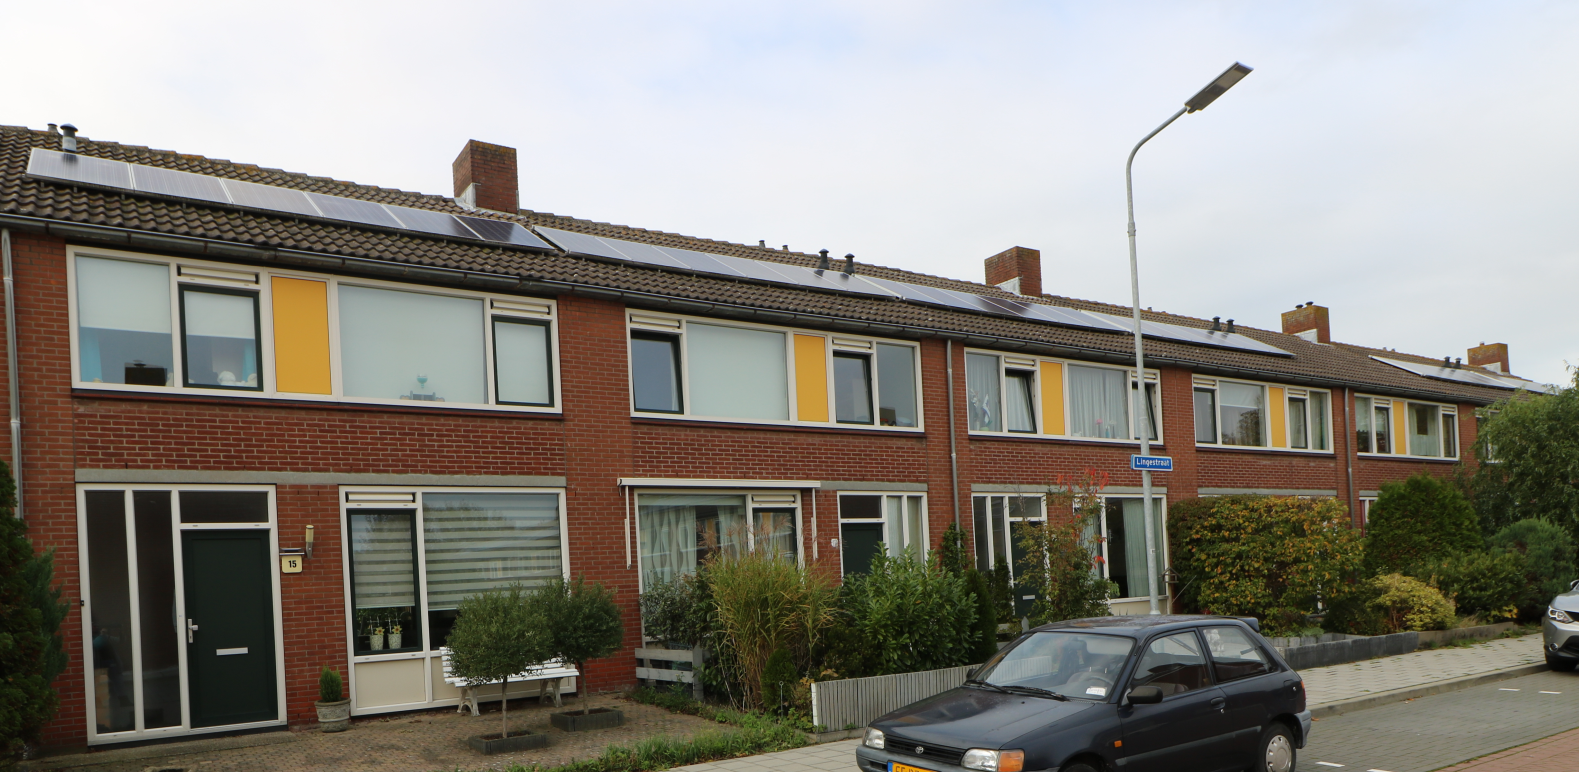 Hontestraat 45, 4388 RZ Oost-Souburg, Nederland